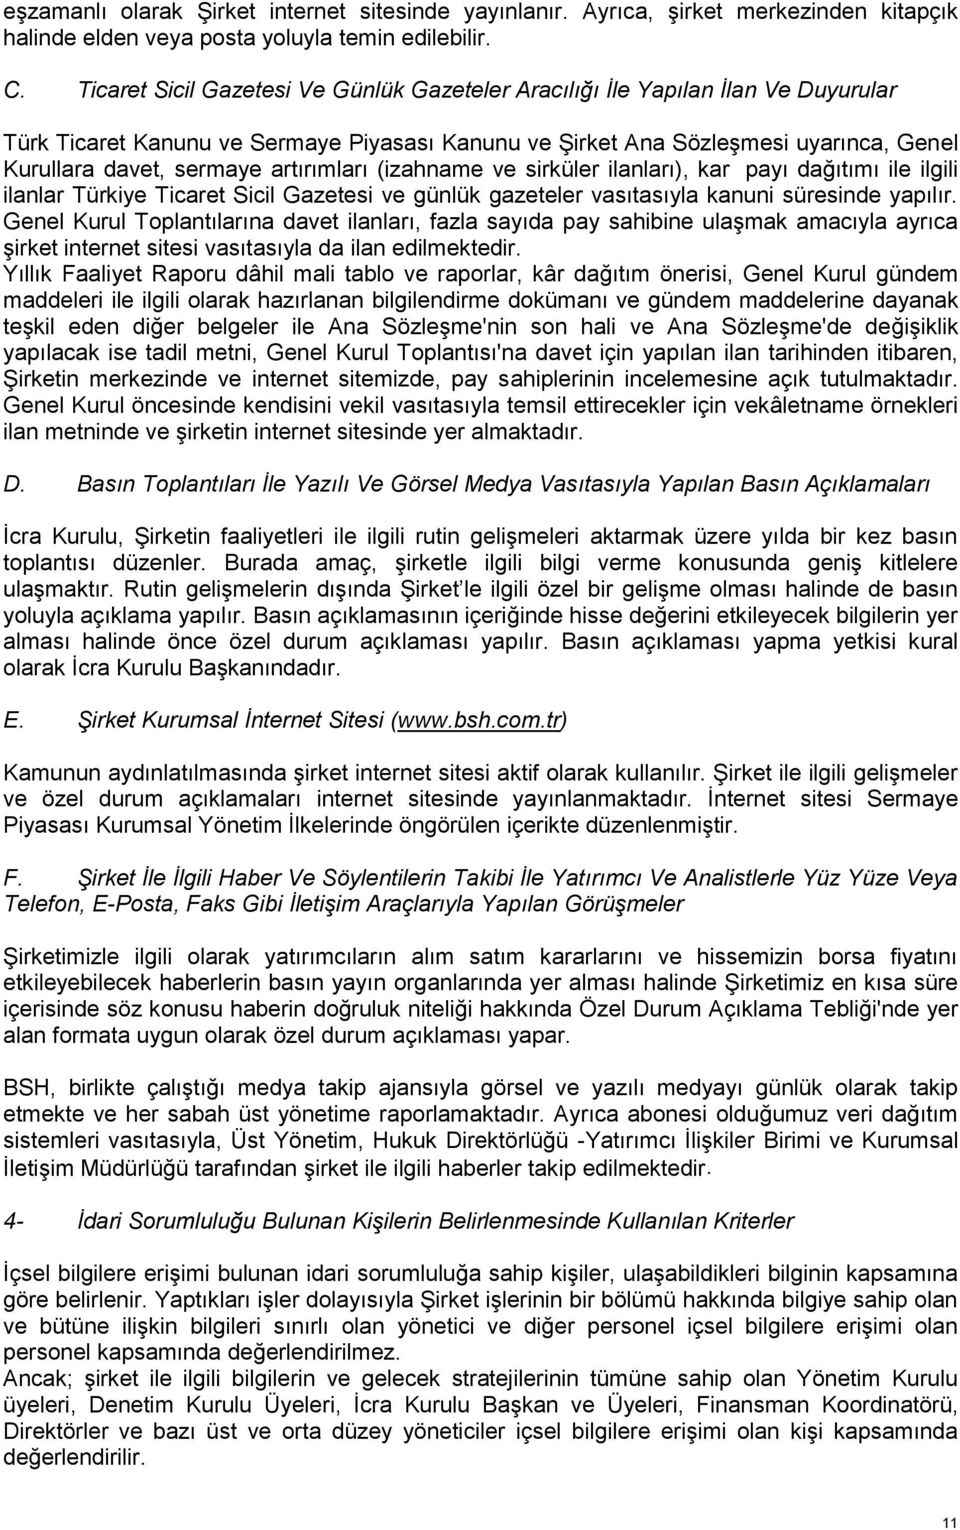 artırımları (izahname ve sirküler ilanları), kar payı dağıtımı ile ilgili ilanlar Türkiye Ticaret Sicil Gazetesi ve günlük gazeteler vasıtasıyla kanuni süresinde yapılır.